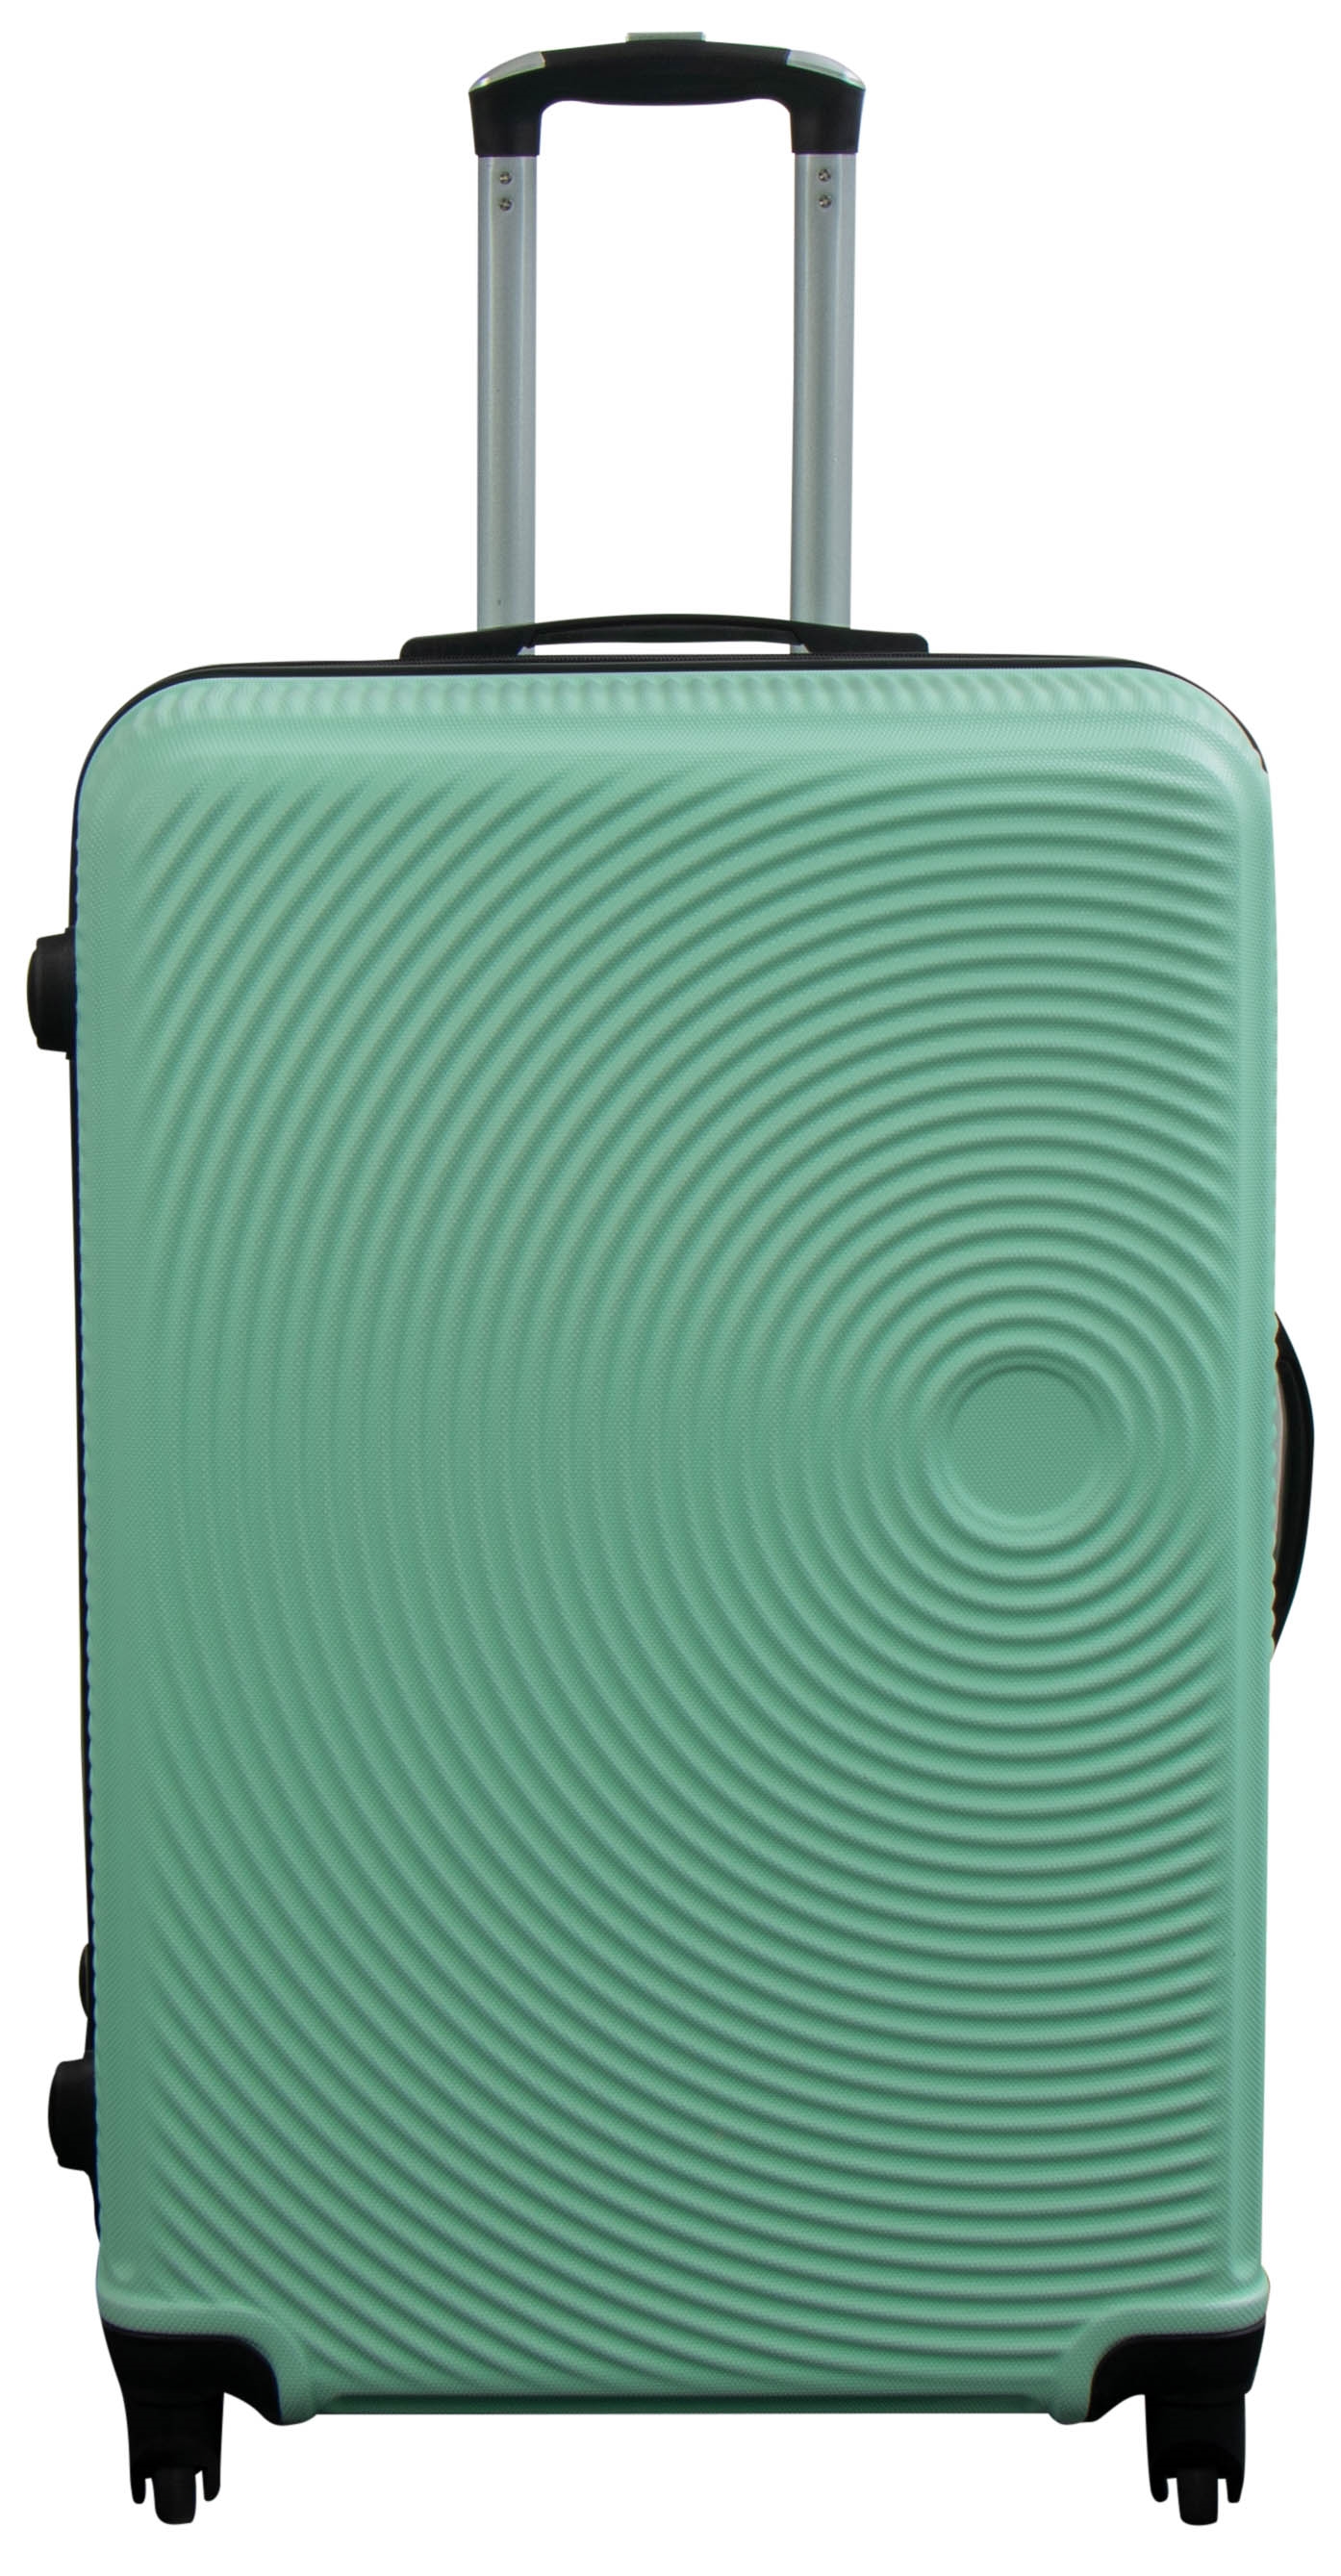 Kuffert • Pastel grøn - Hardcase kuffert • ny kuffert her→